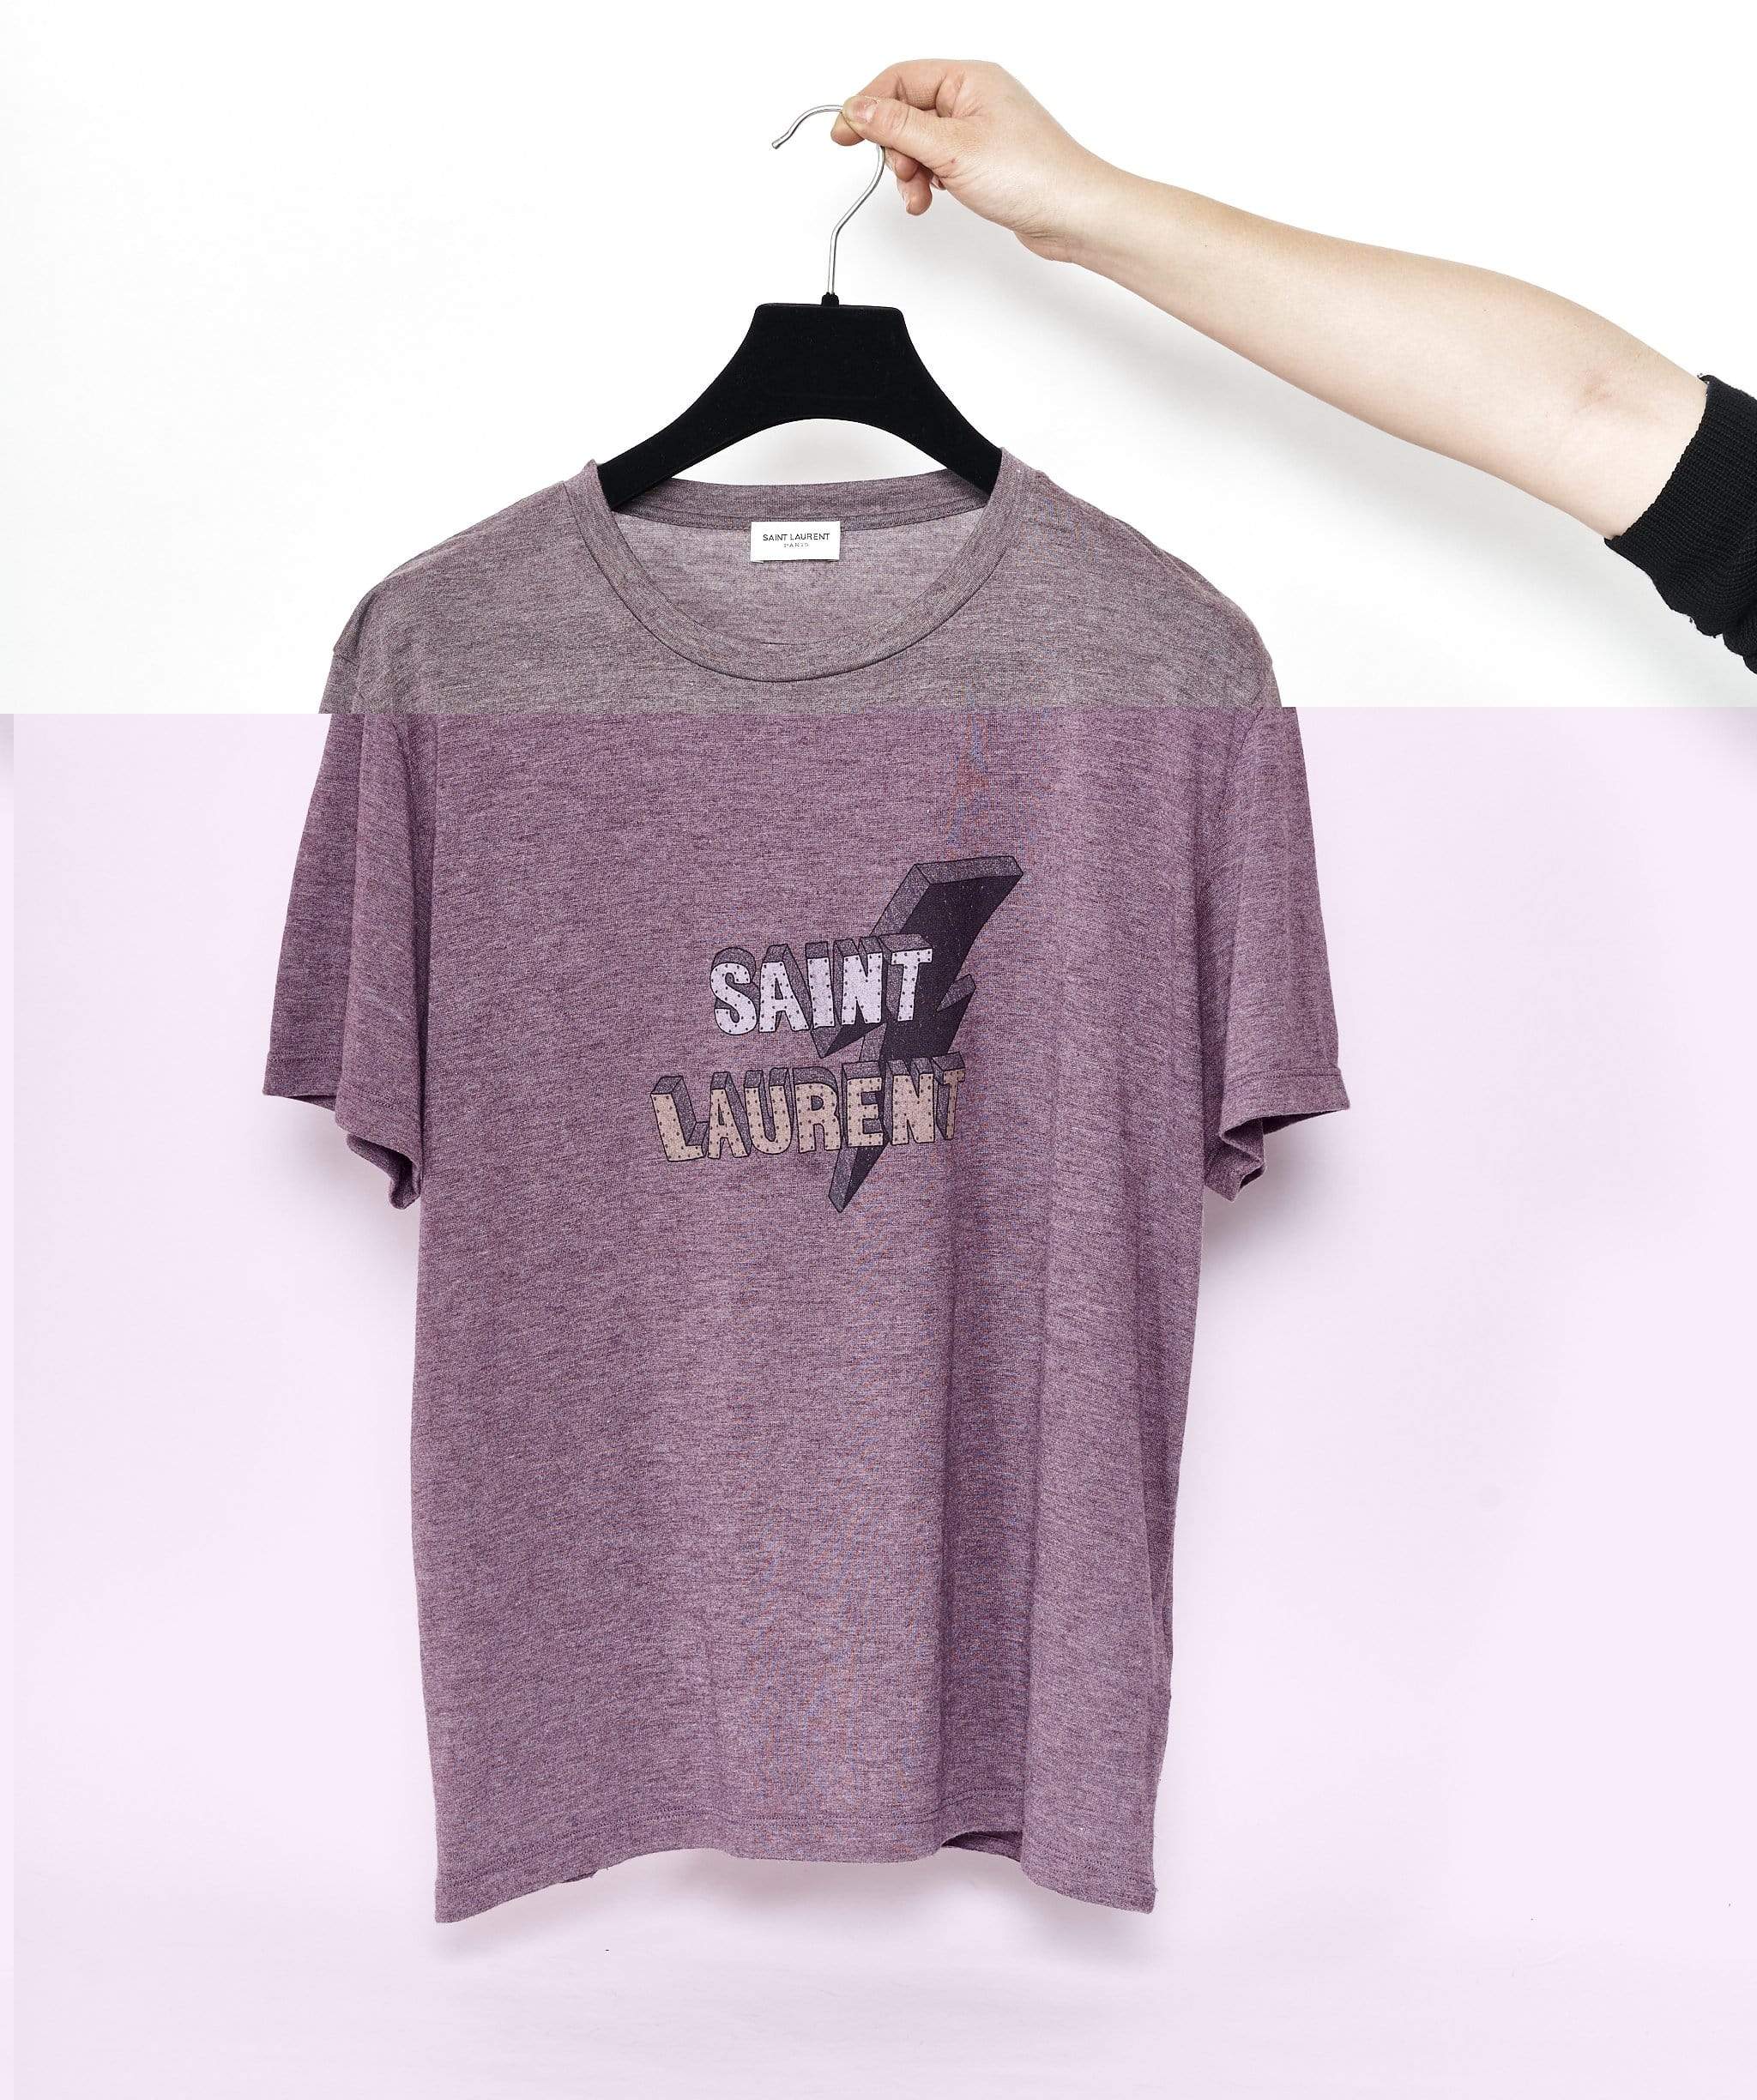 Yves Saint Laurent Saint Laurent Purple Band T-shirt size M